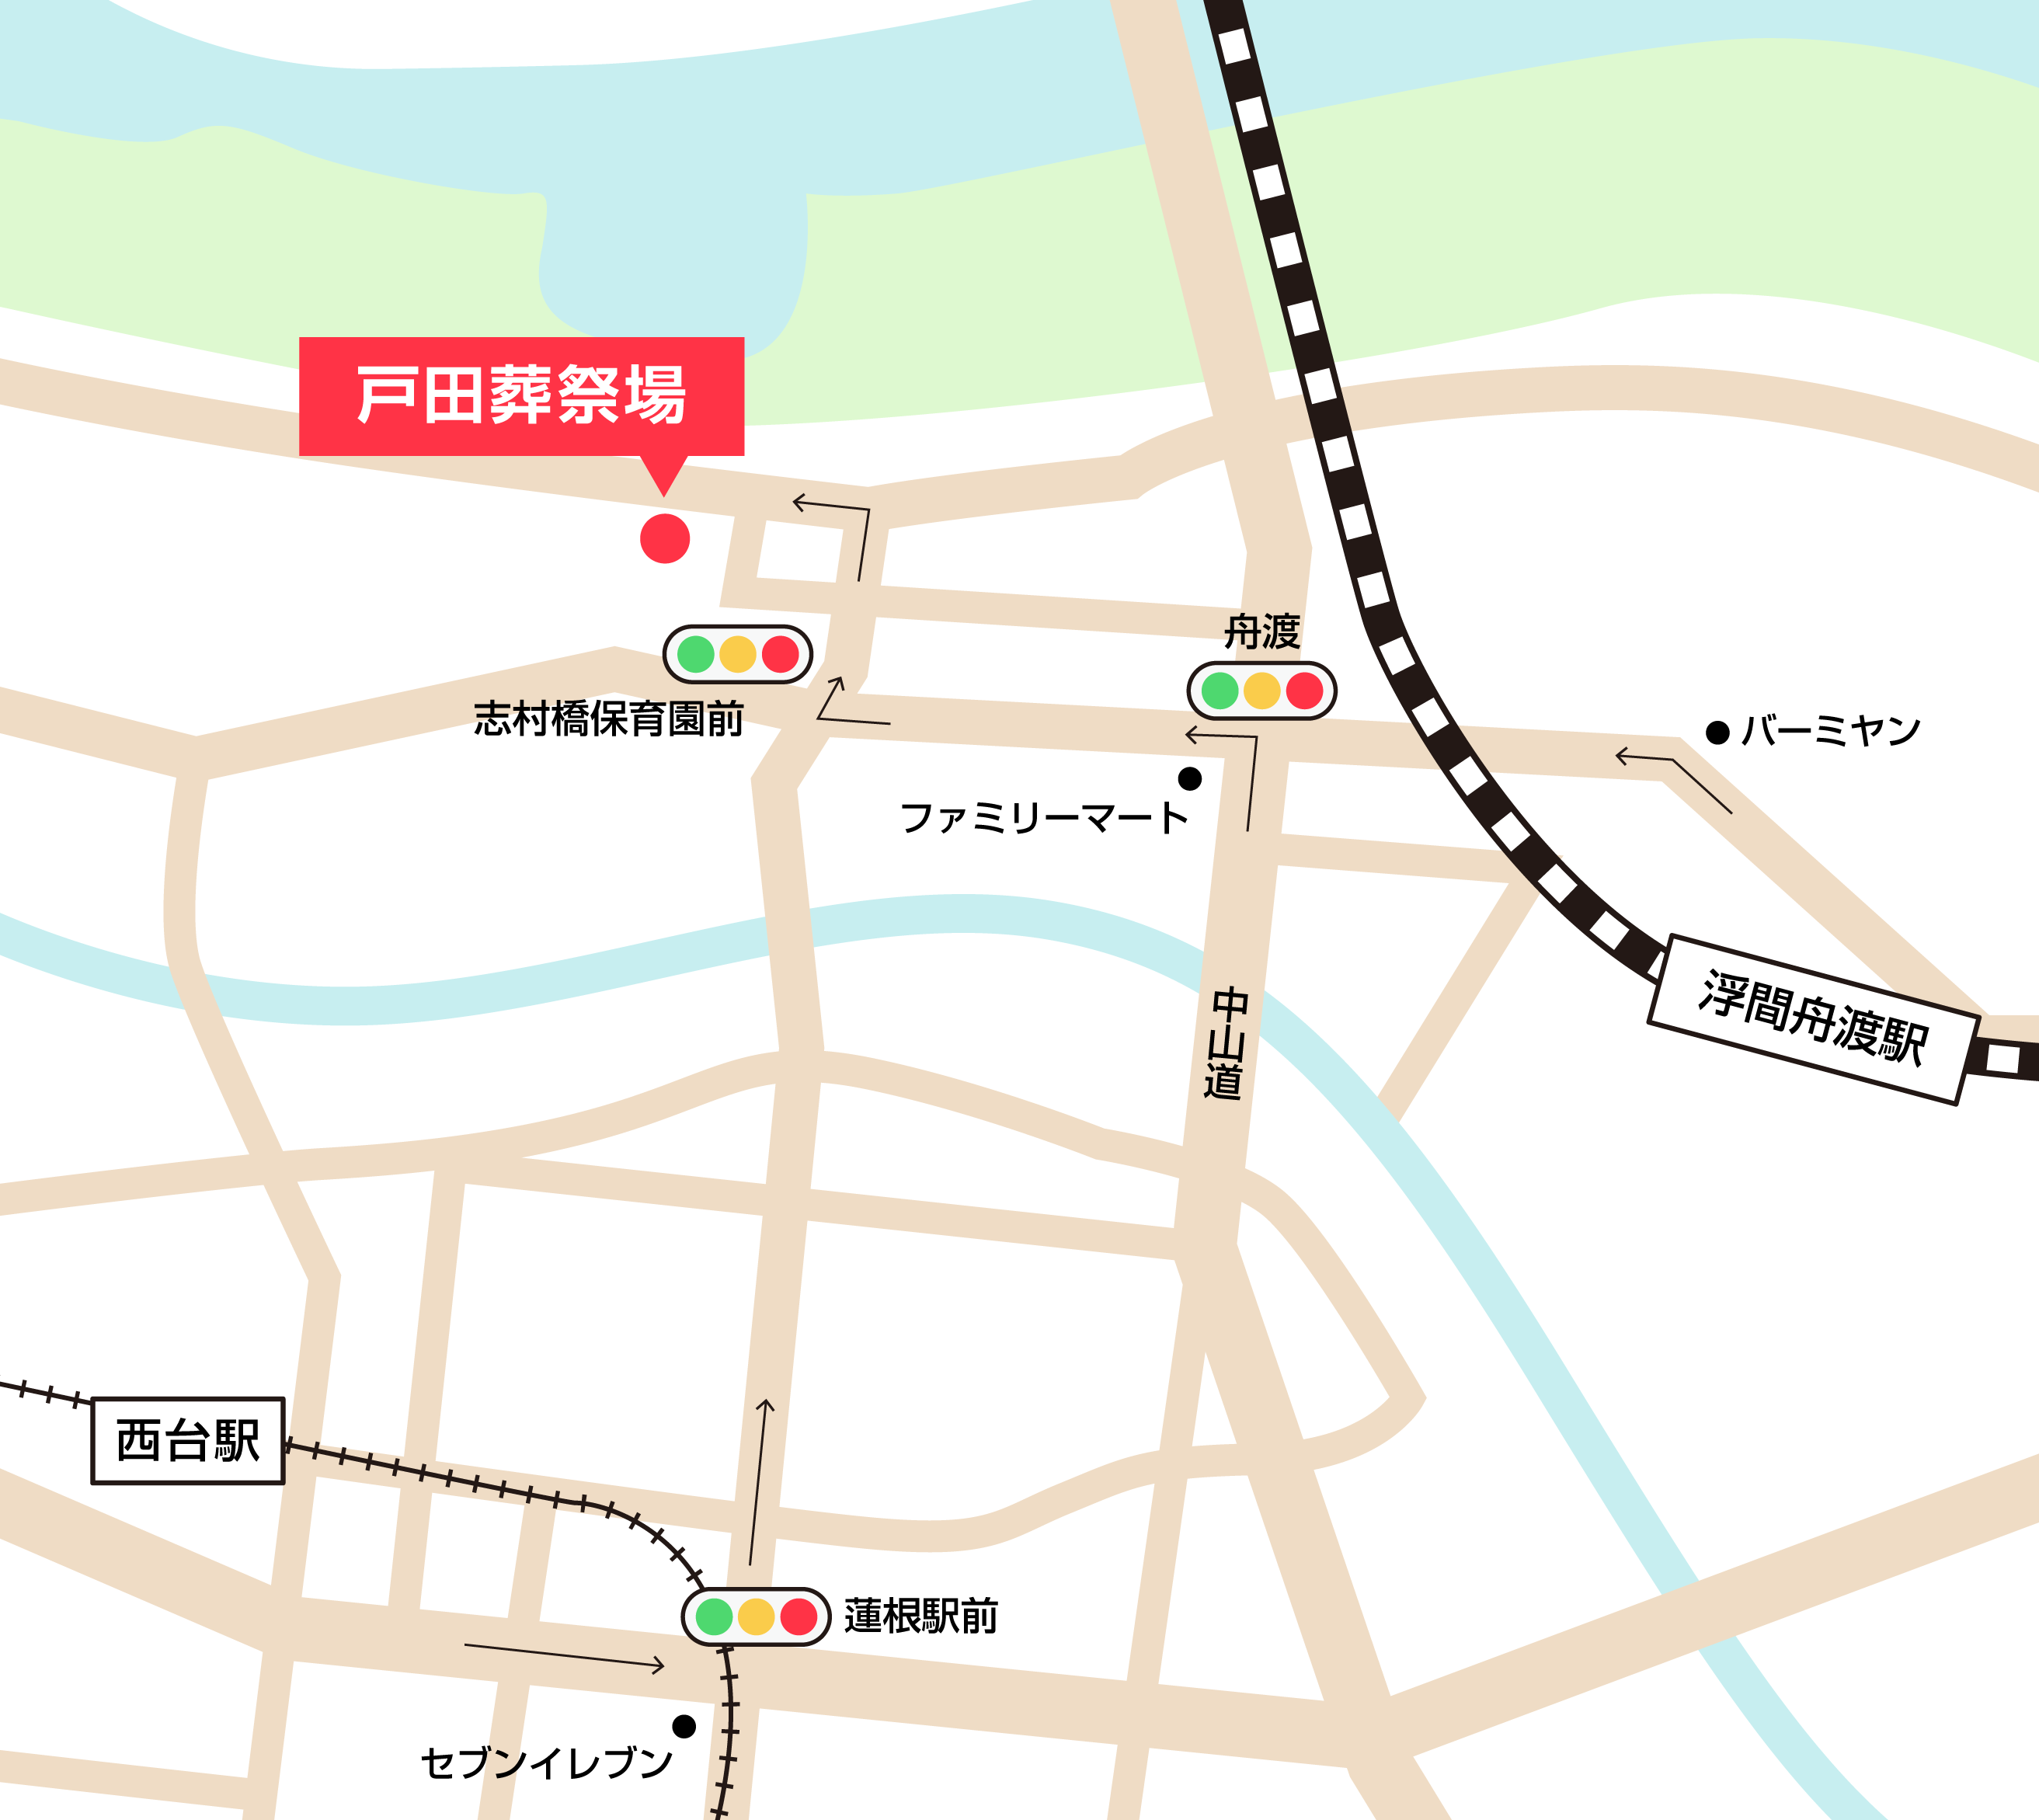 戸田葬祭場への車での行き方・アクセスを記した地図